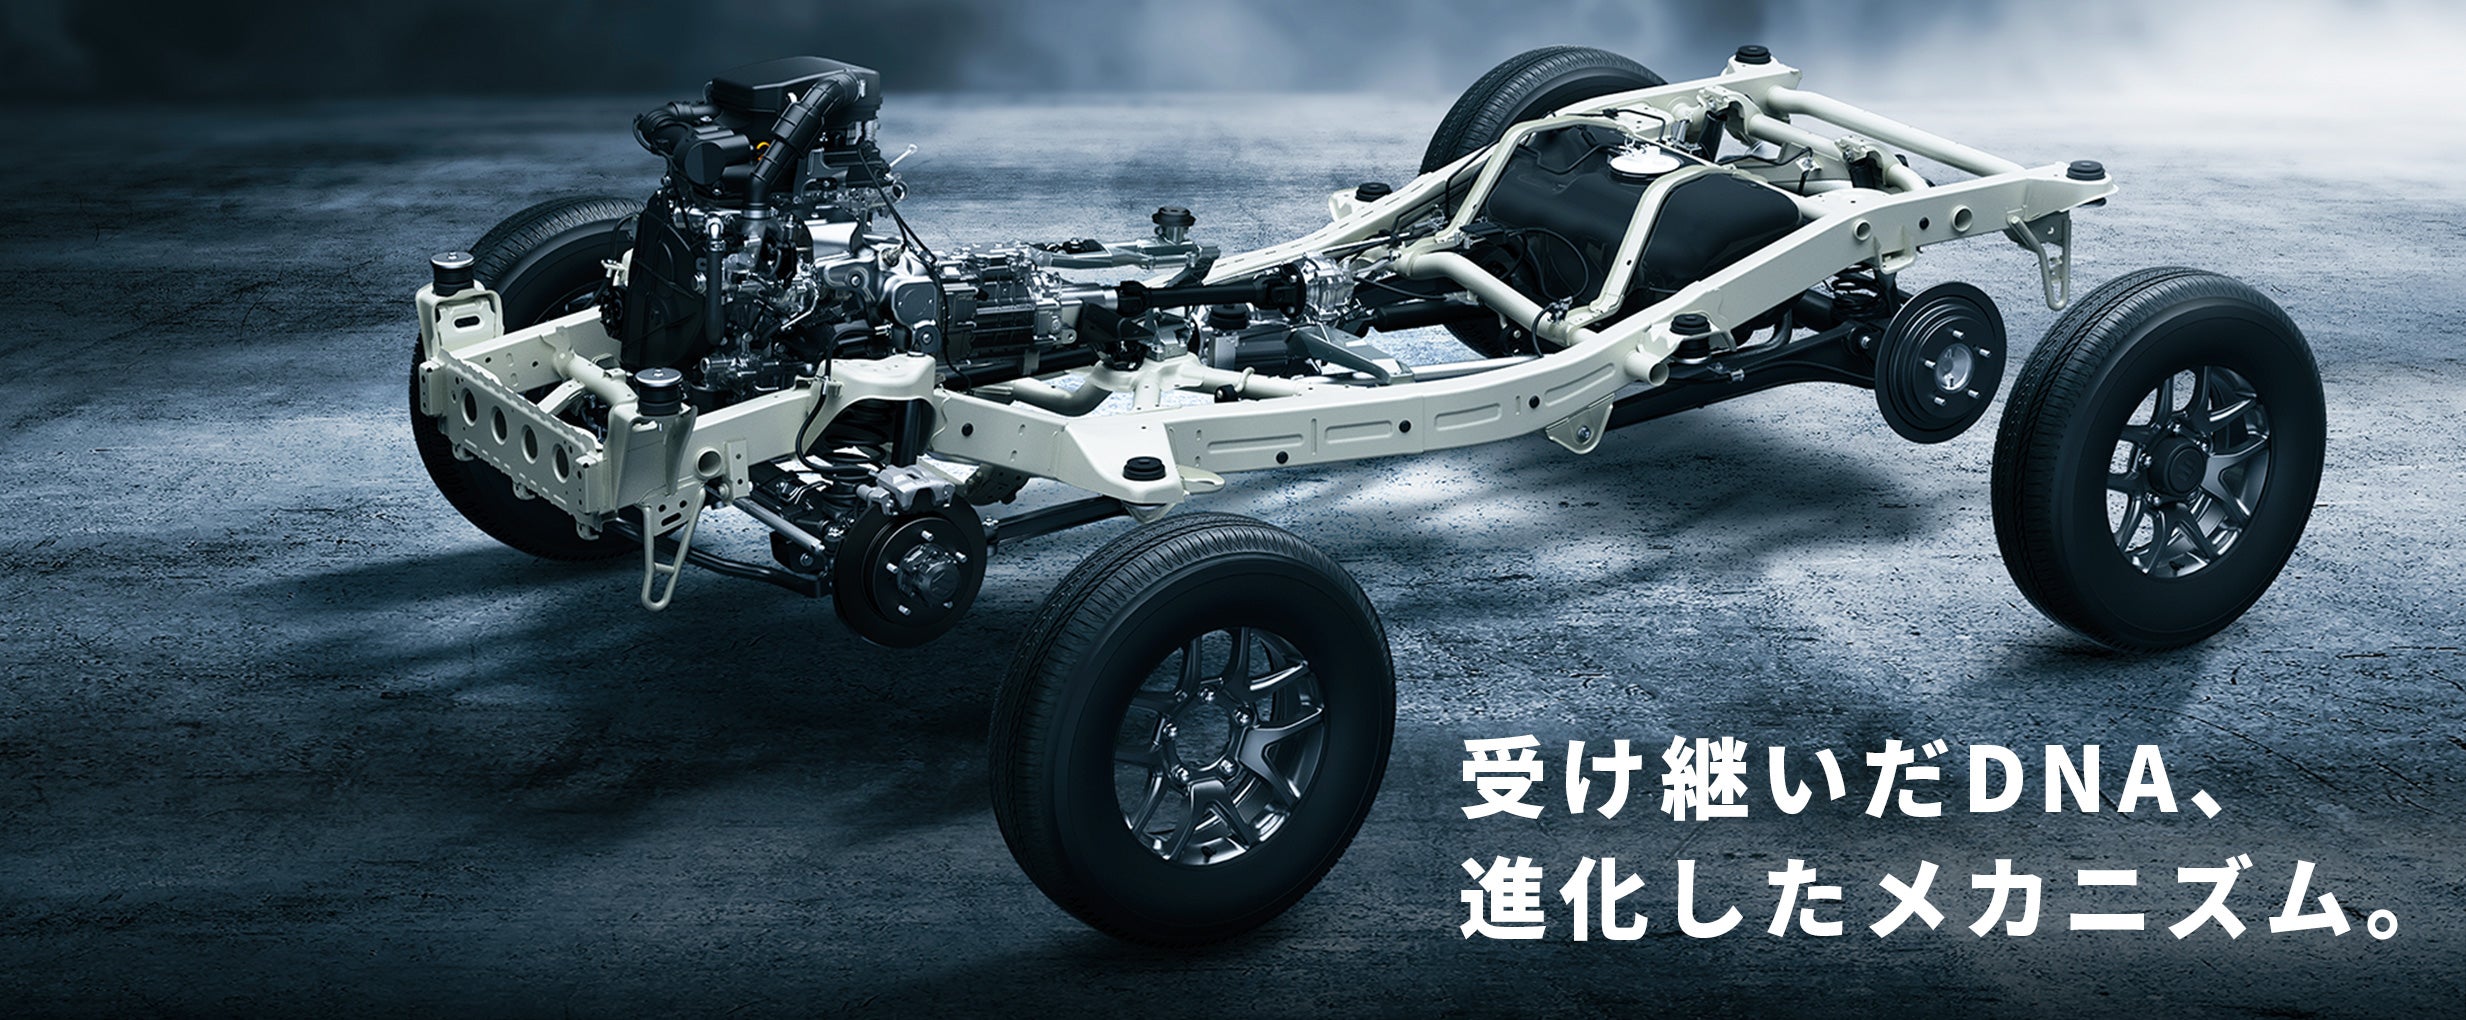 A Suzuki Jimny EV Is Part of Suzuki’s Plan for World Domination by 2030